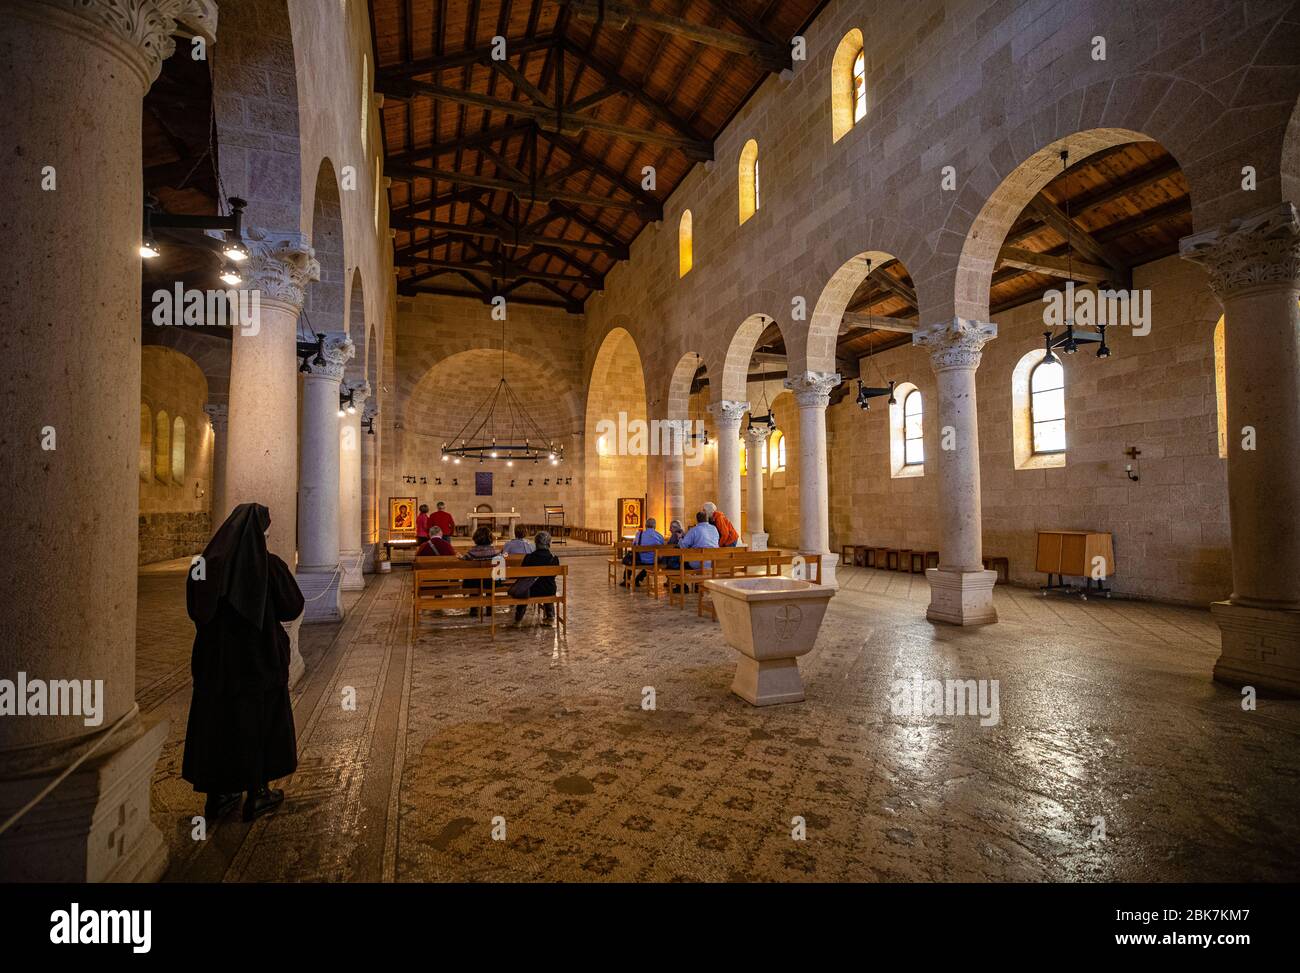 Iglesia de la multiplicación de los panes y peces en Tabgha, Israel Foto de stock